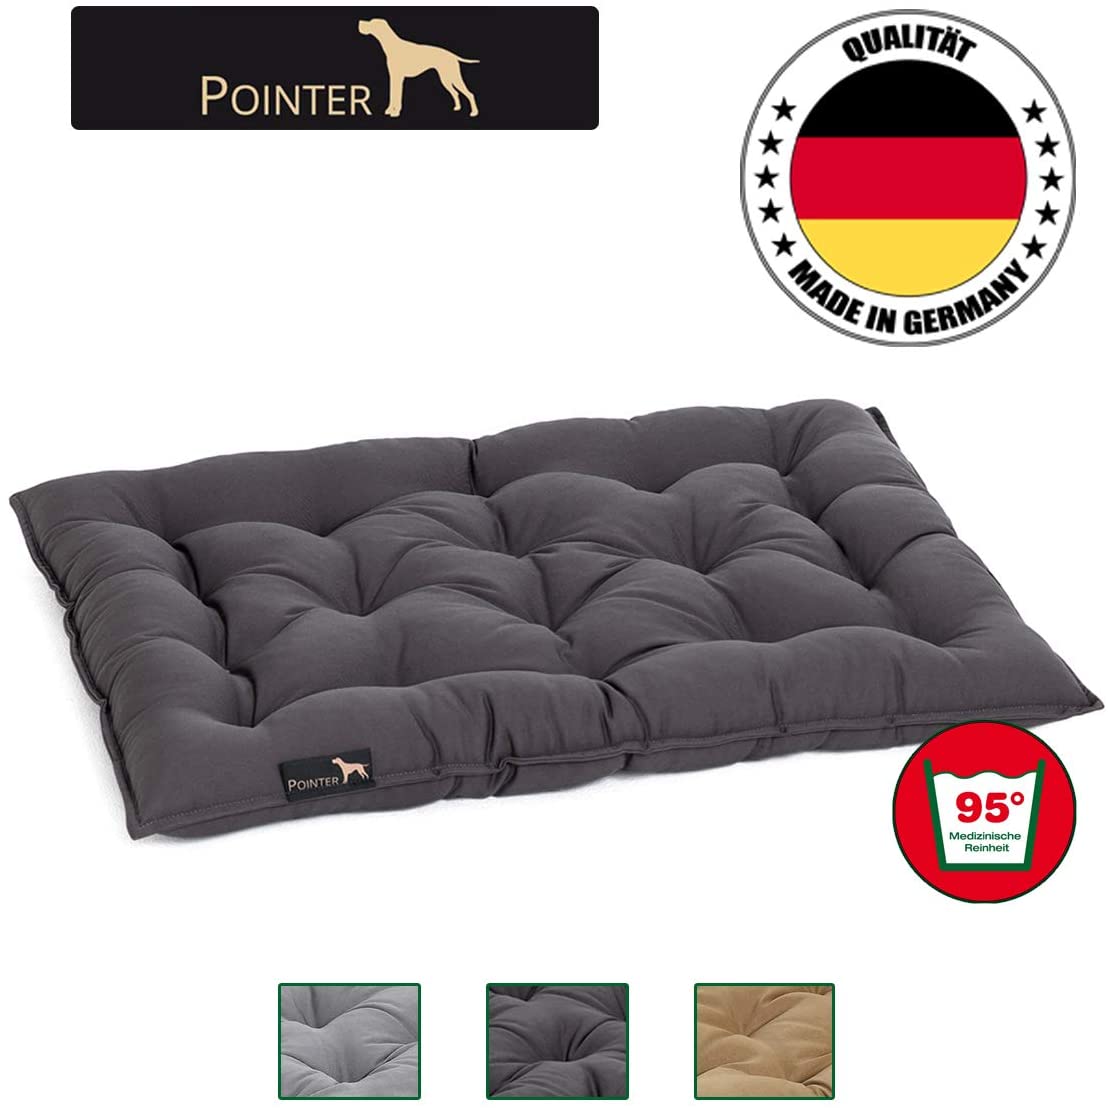  Pointer - Almohada Urban para perro, Cómodo cama/sofa para perros, Cojín para mascotas ortopédico, Colchon para perros pequeños, medianos y grandes-lavable a 95°C en todo-tamaño y color seleccionables 